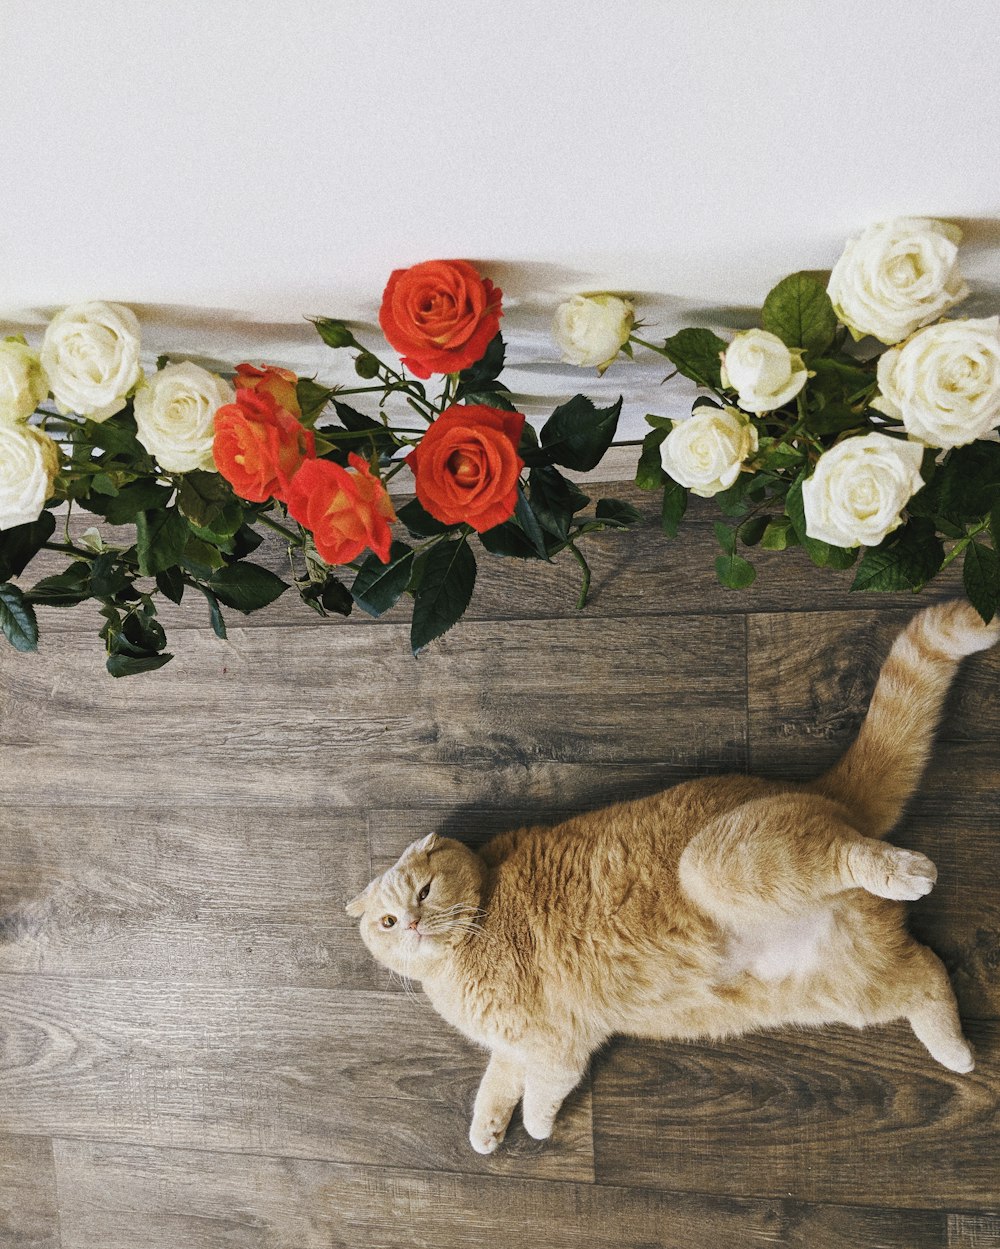 Chat tigré orange couché sur le sol près de fleurs de roses rouges et blanches